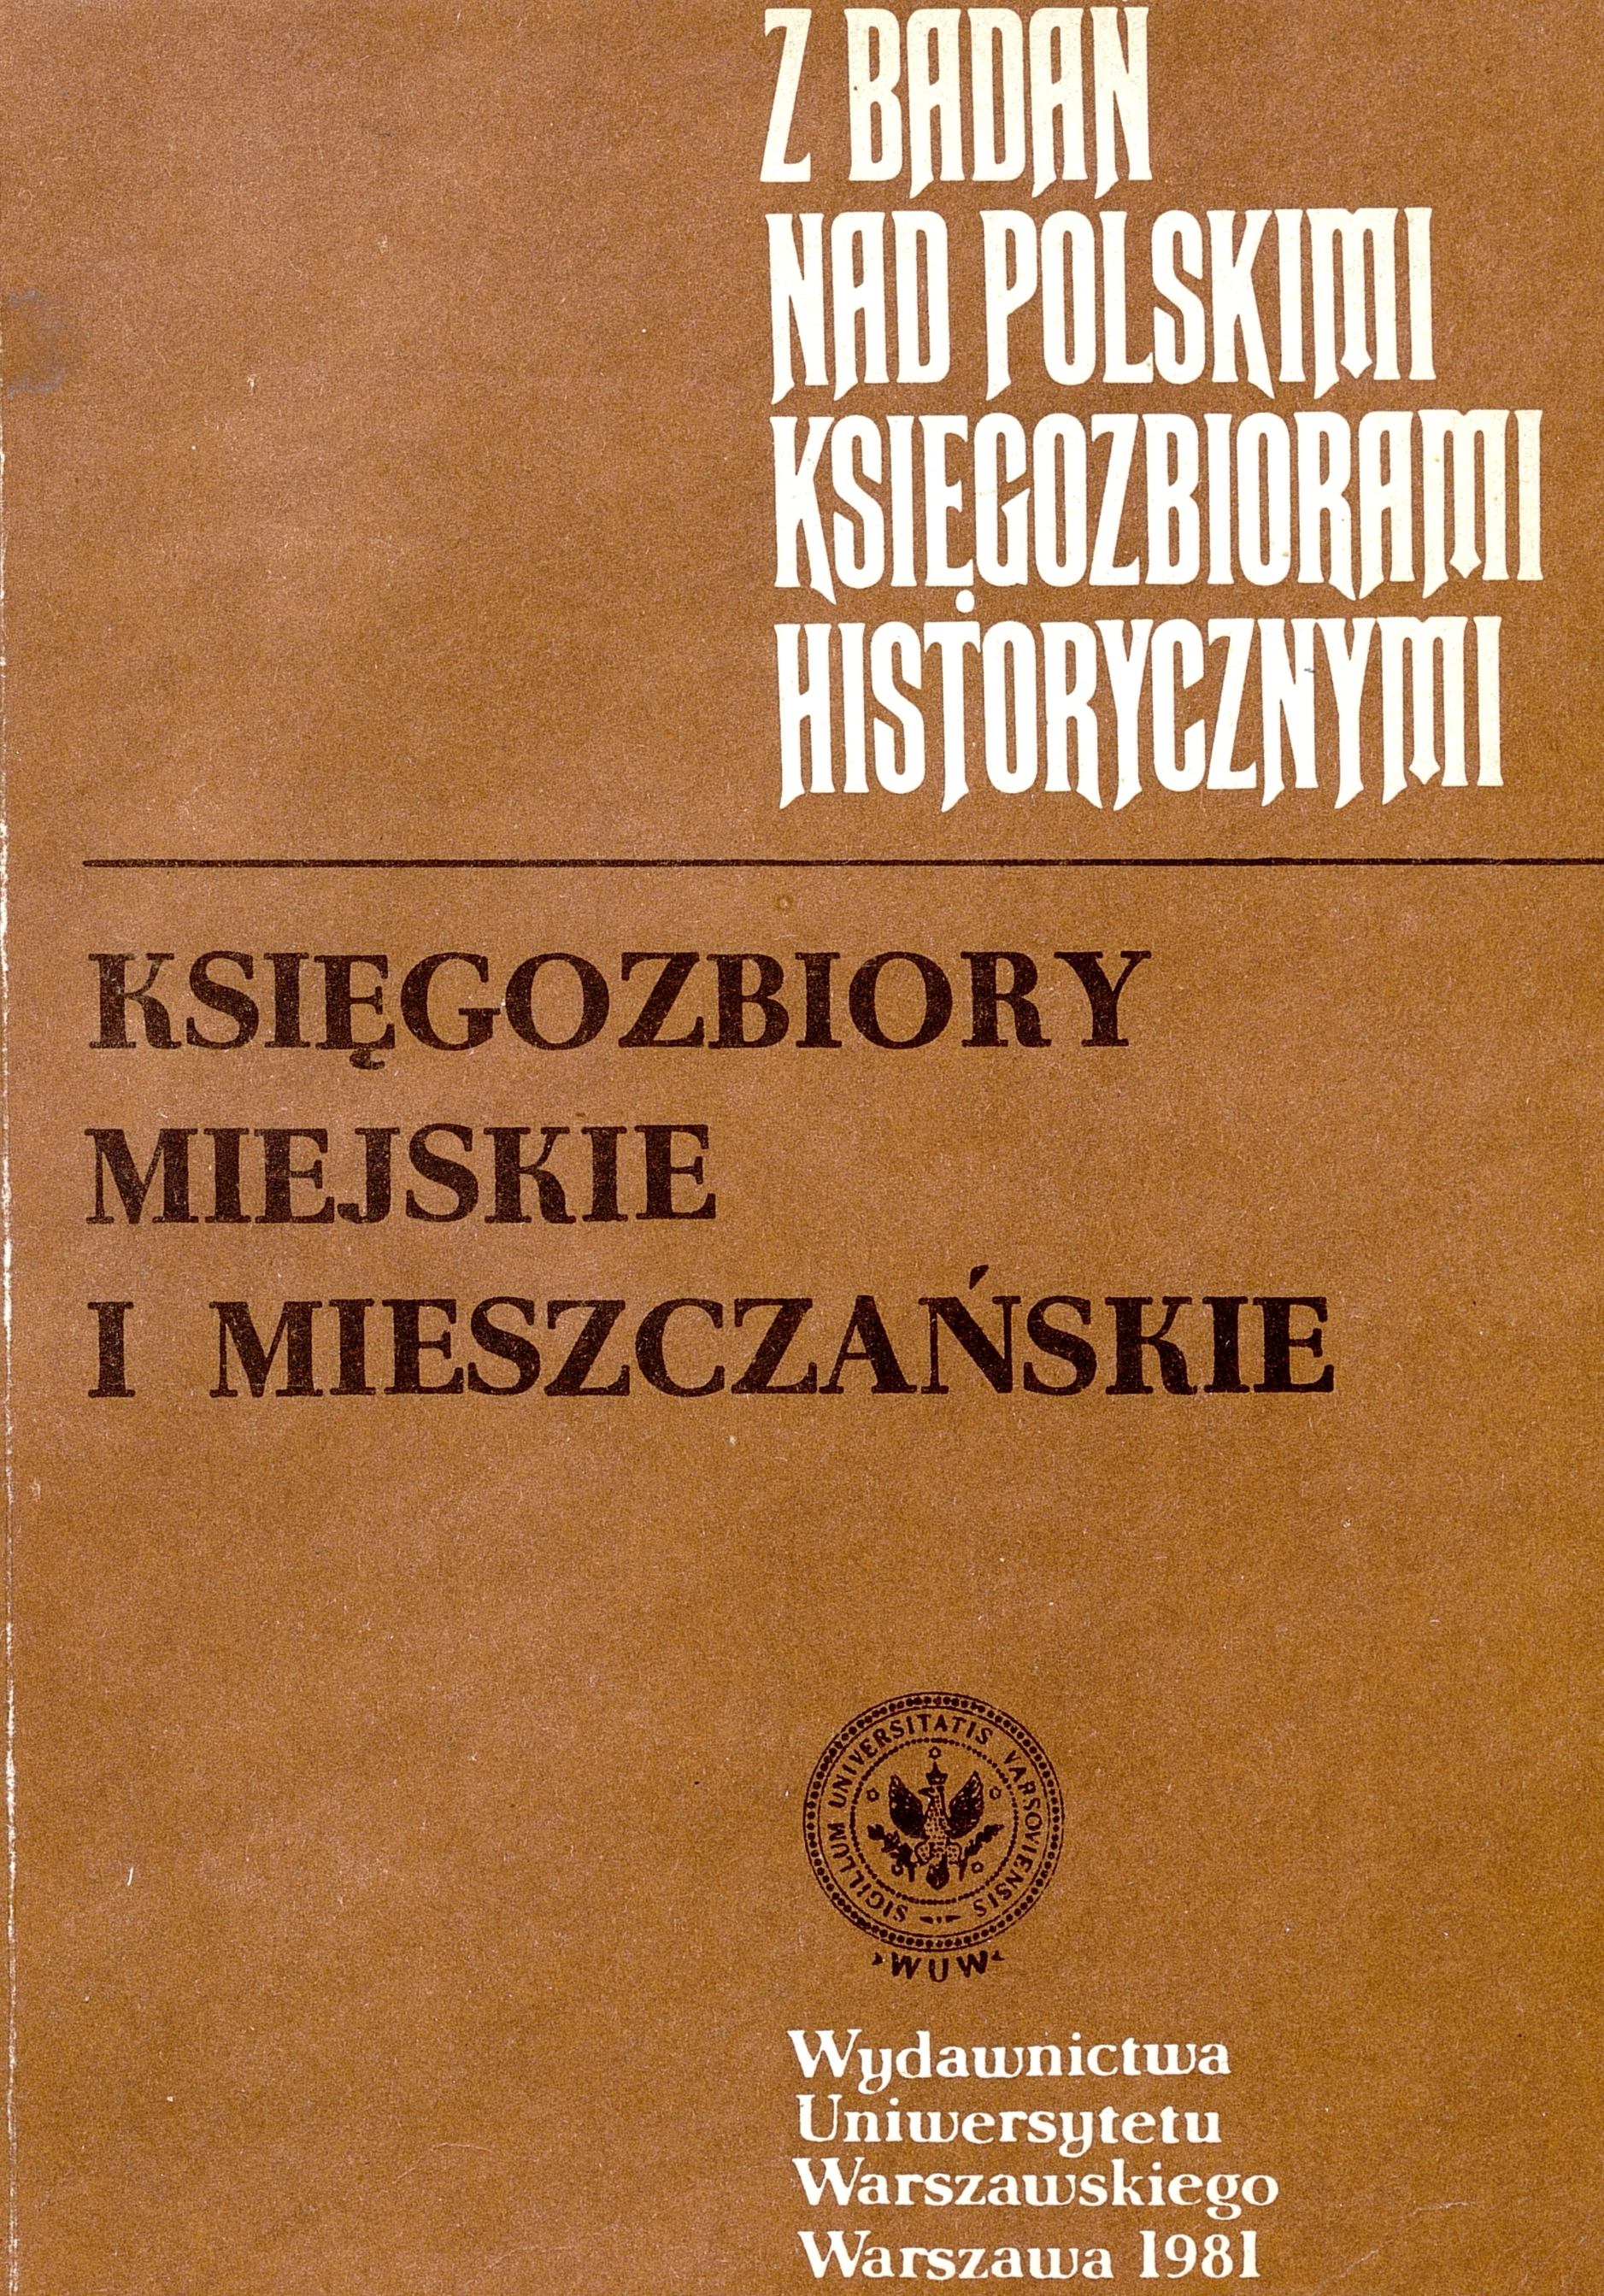 					View 1981: Z Badań nad Polskimi Księgozbiorami Historycznymi - Zeszyt 6
				